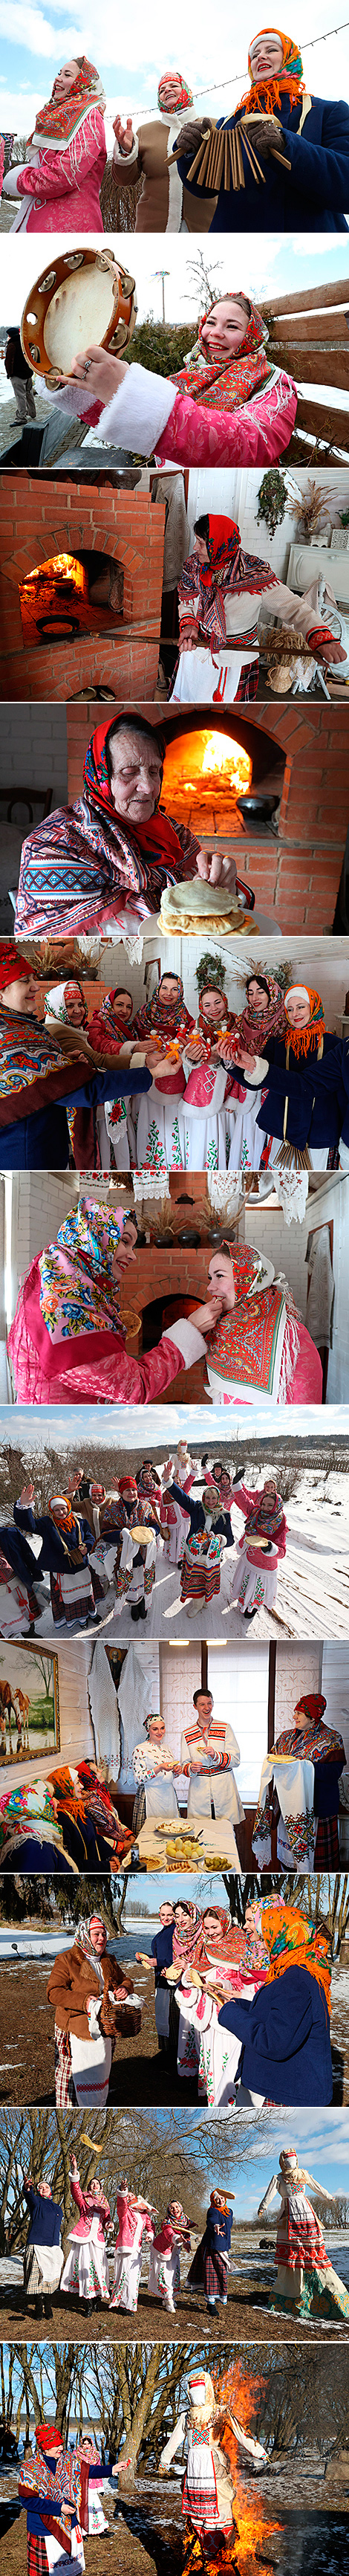 Красивые традиции празднования Масленицы в Могилевском районе